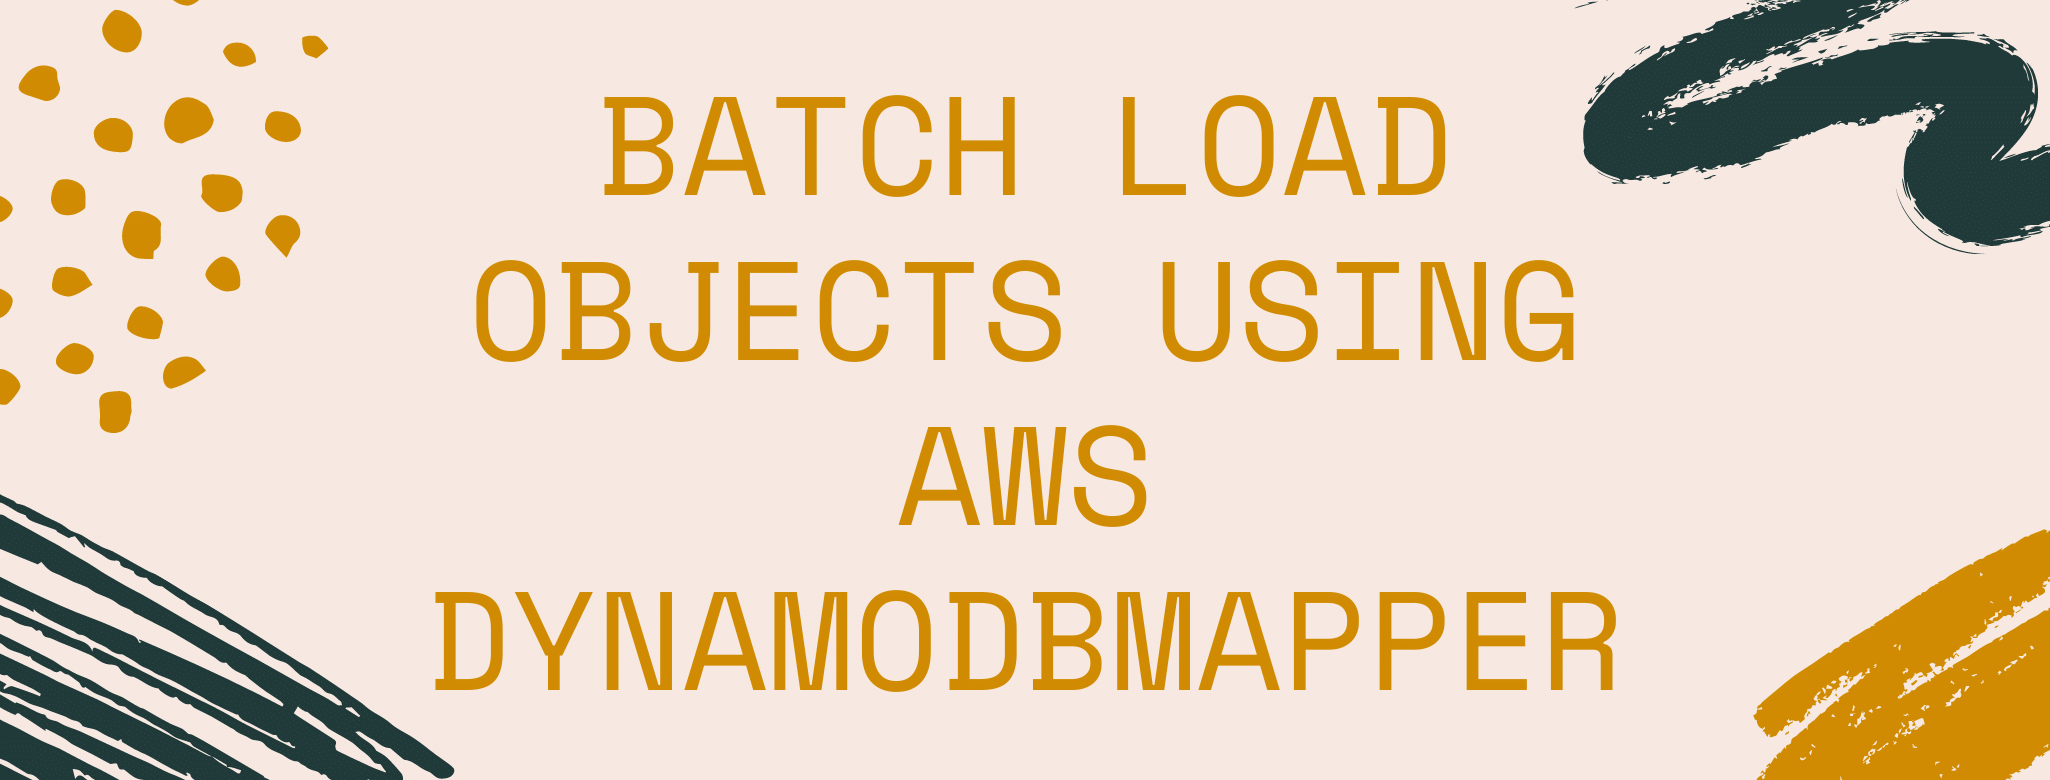 Batch load objects using AWS dynamoDBMapper in JAVA